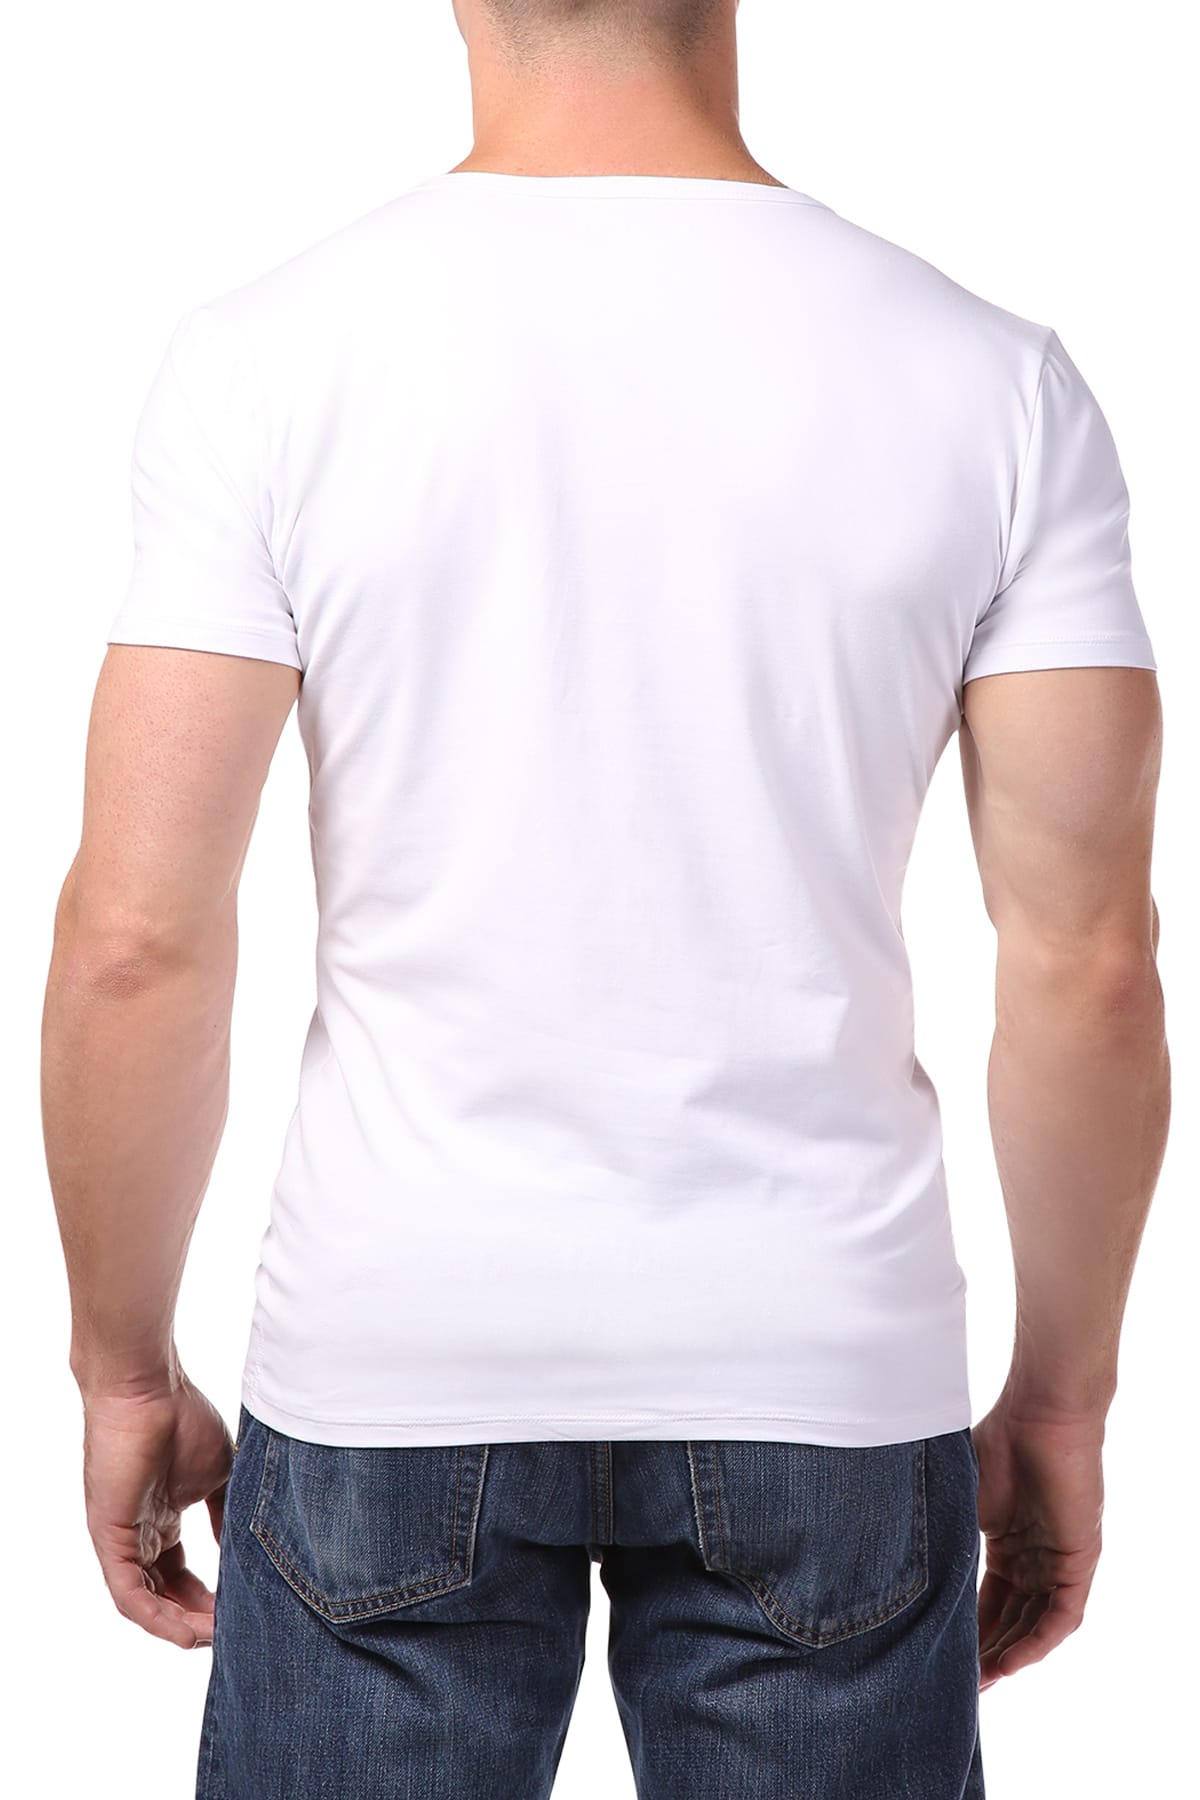 Papi White Body Defining V-Neck Shirt